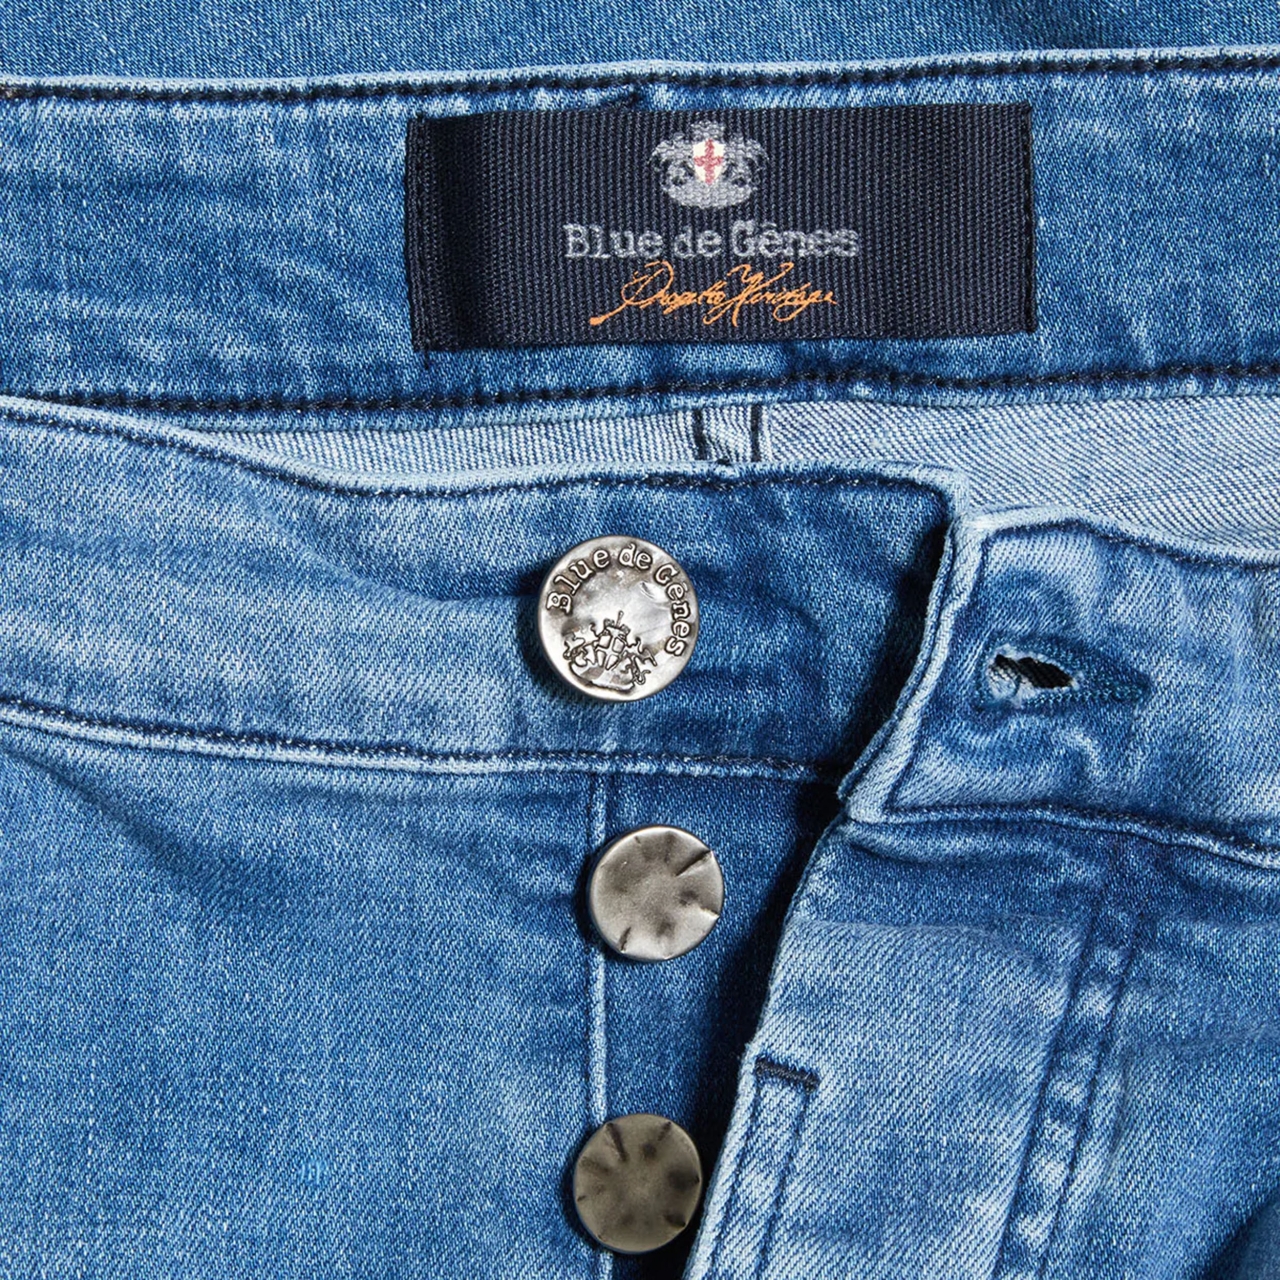 BLUE DE GENES Vinci 3395 Light Jeans